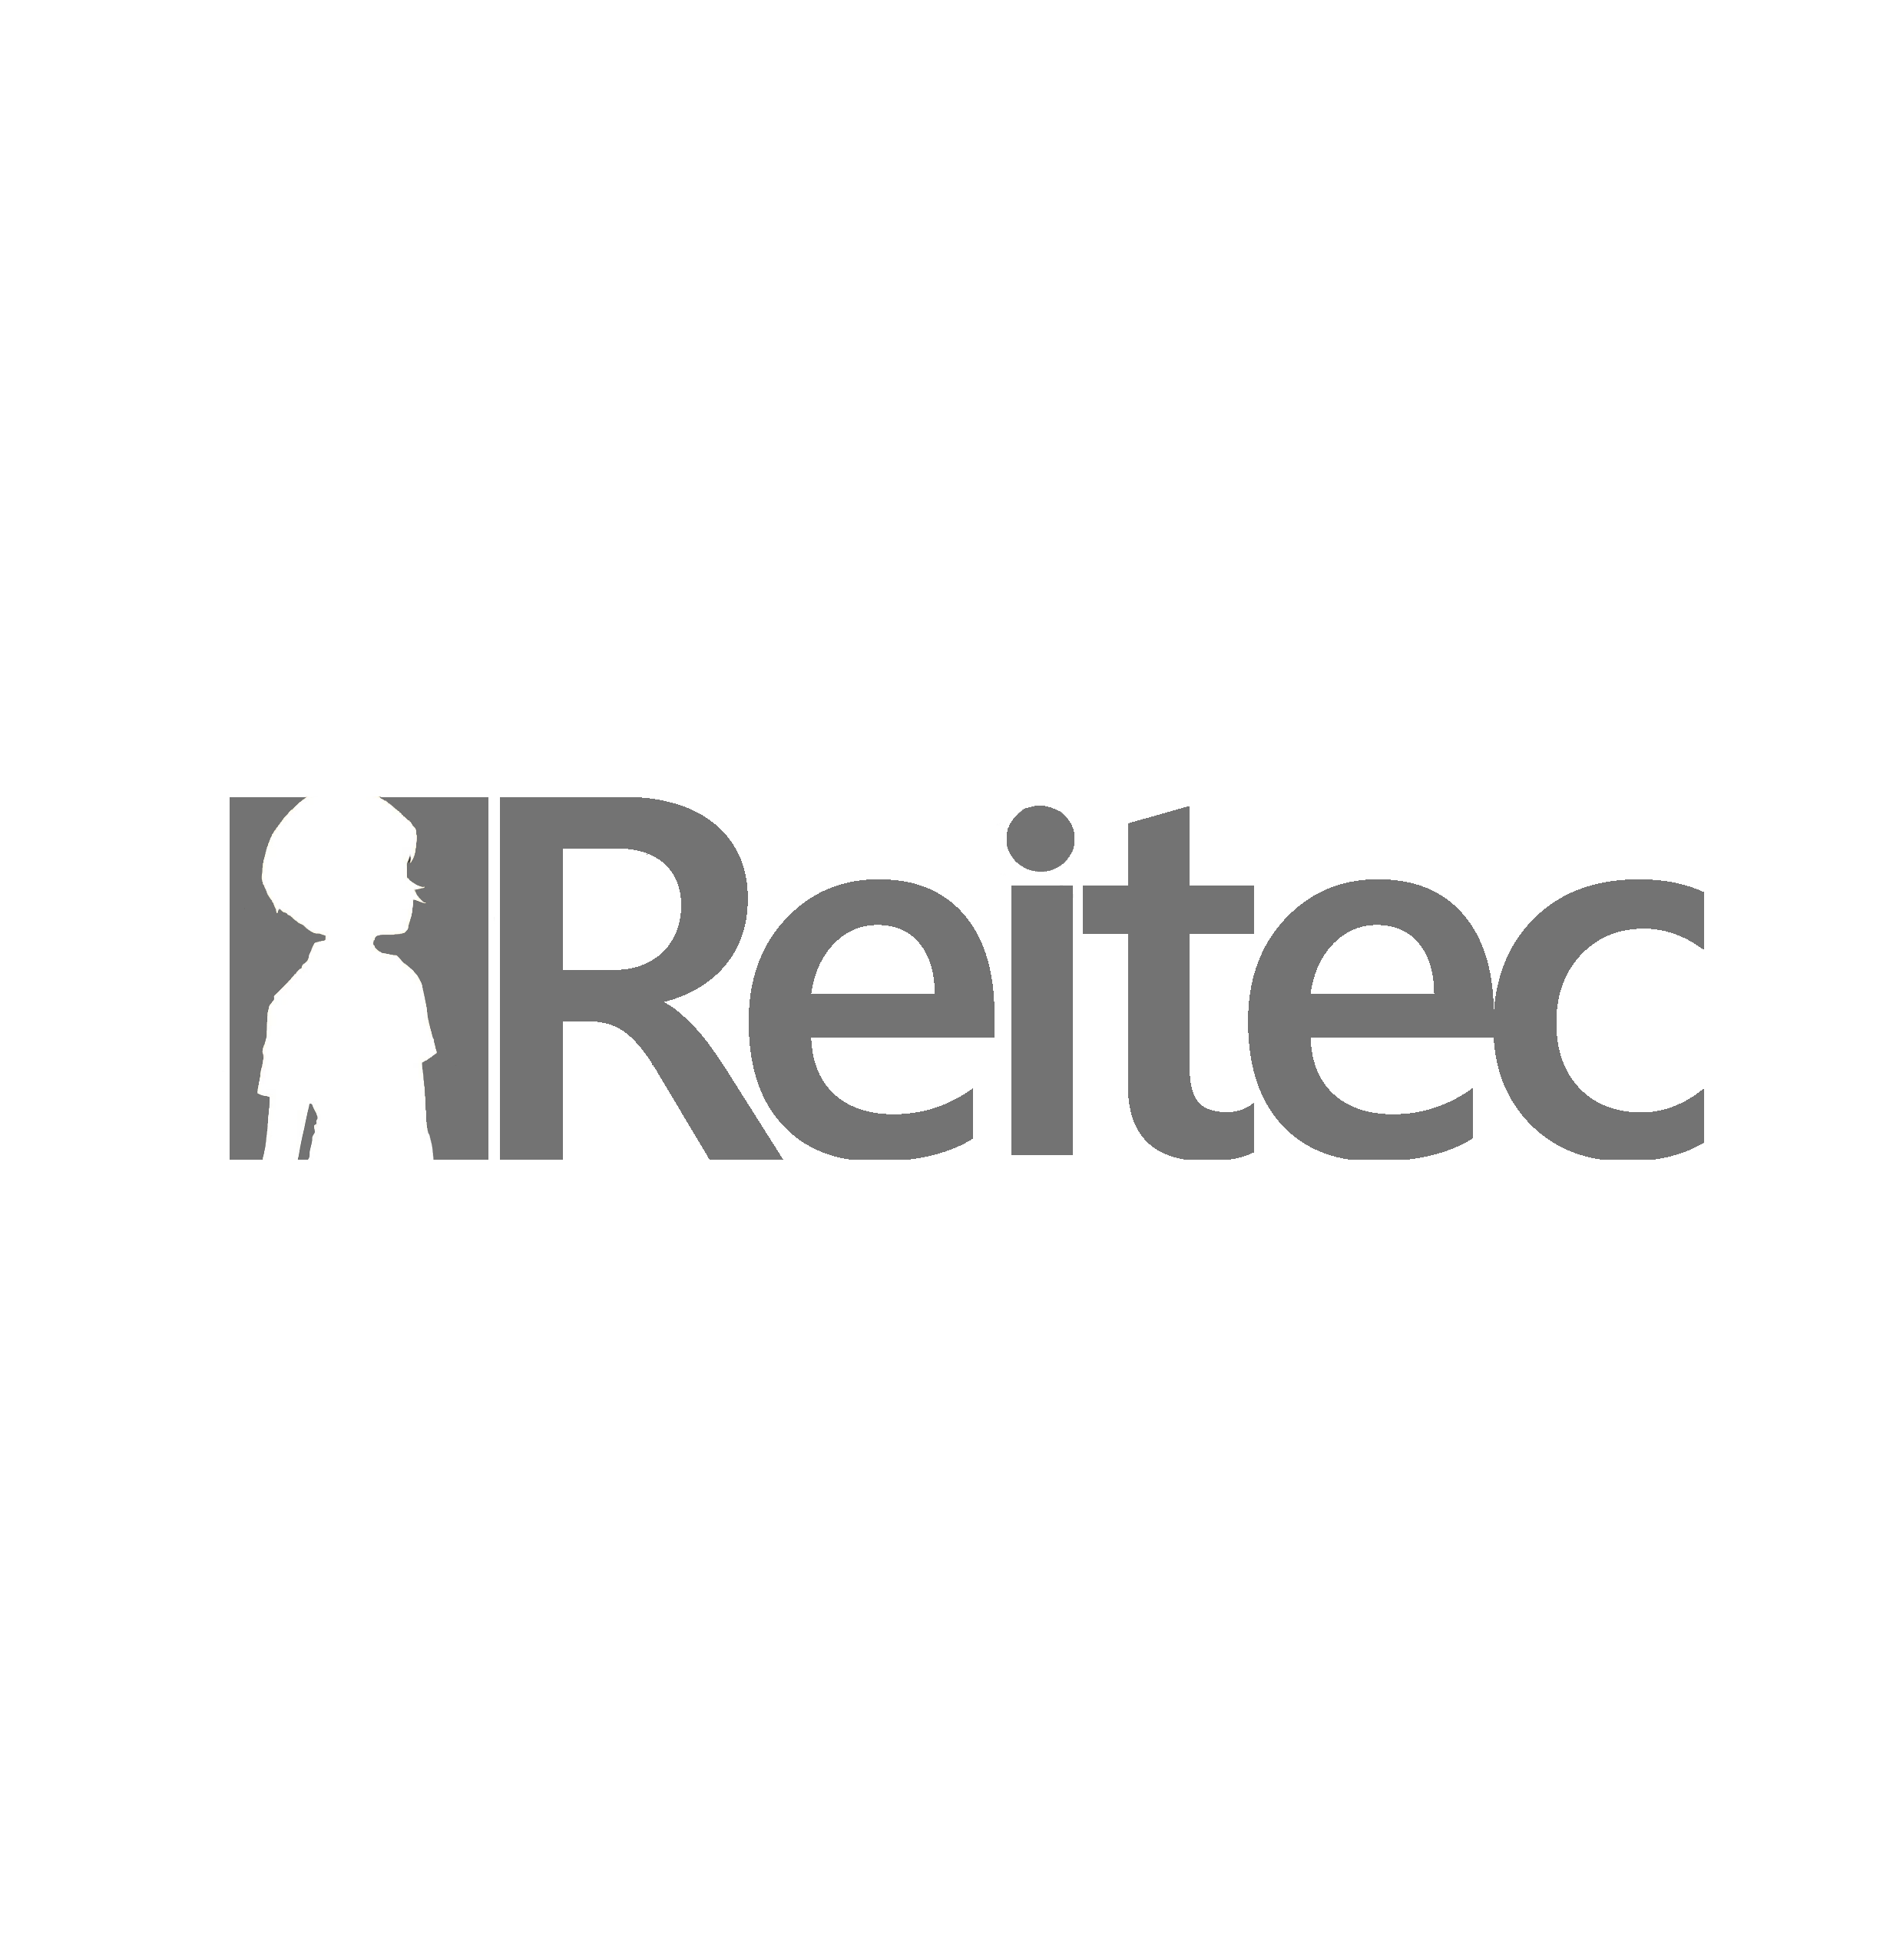 Reitec Pty Ltd